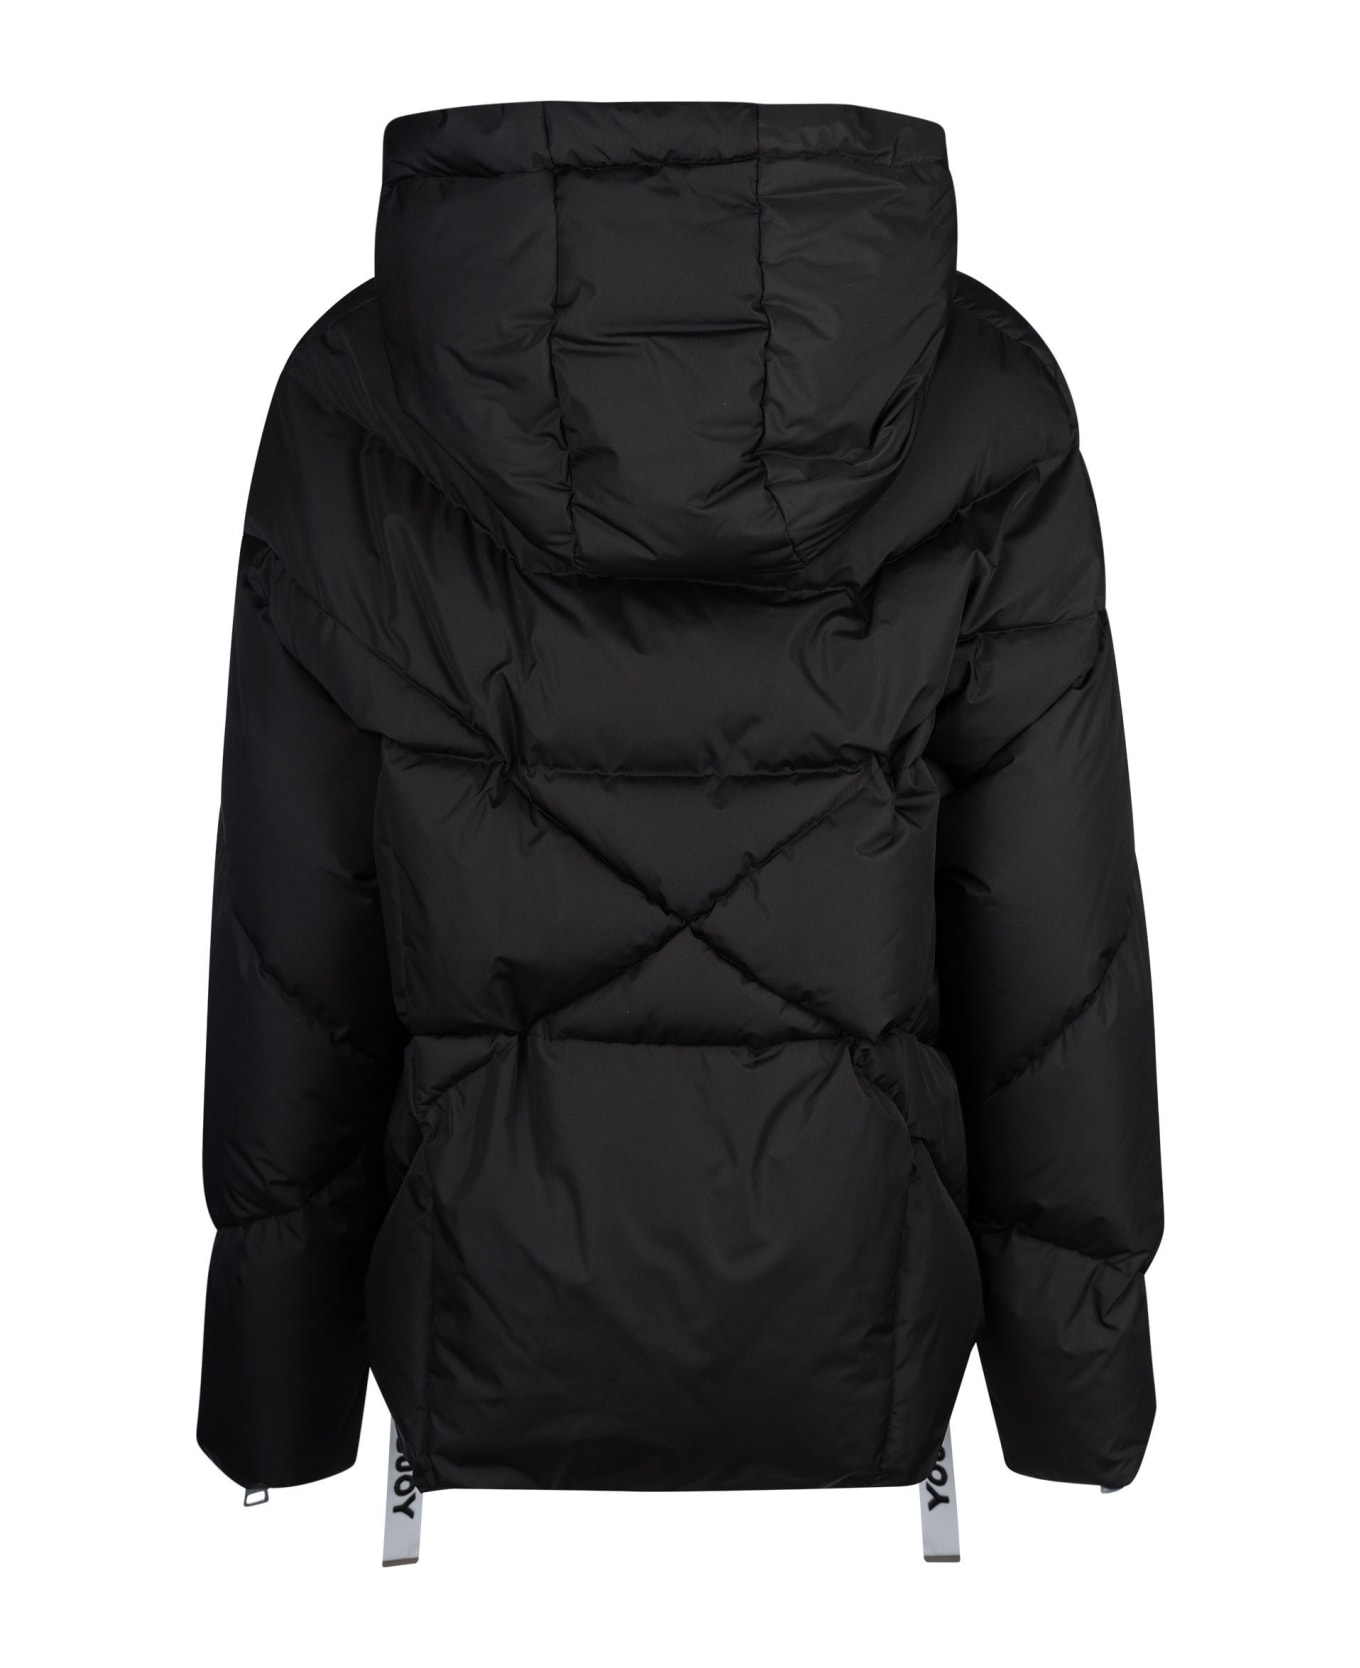 Khrisjoy Iconic Puffer Jacket - Black